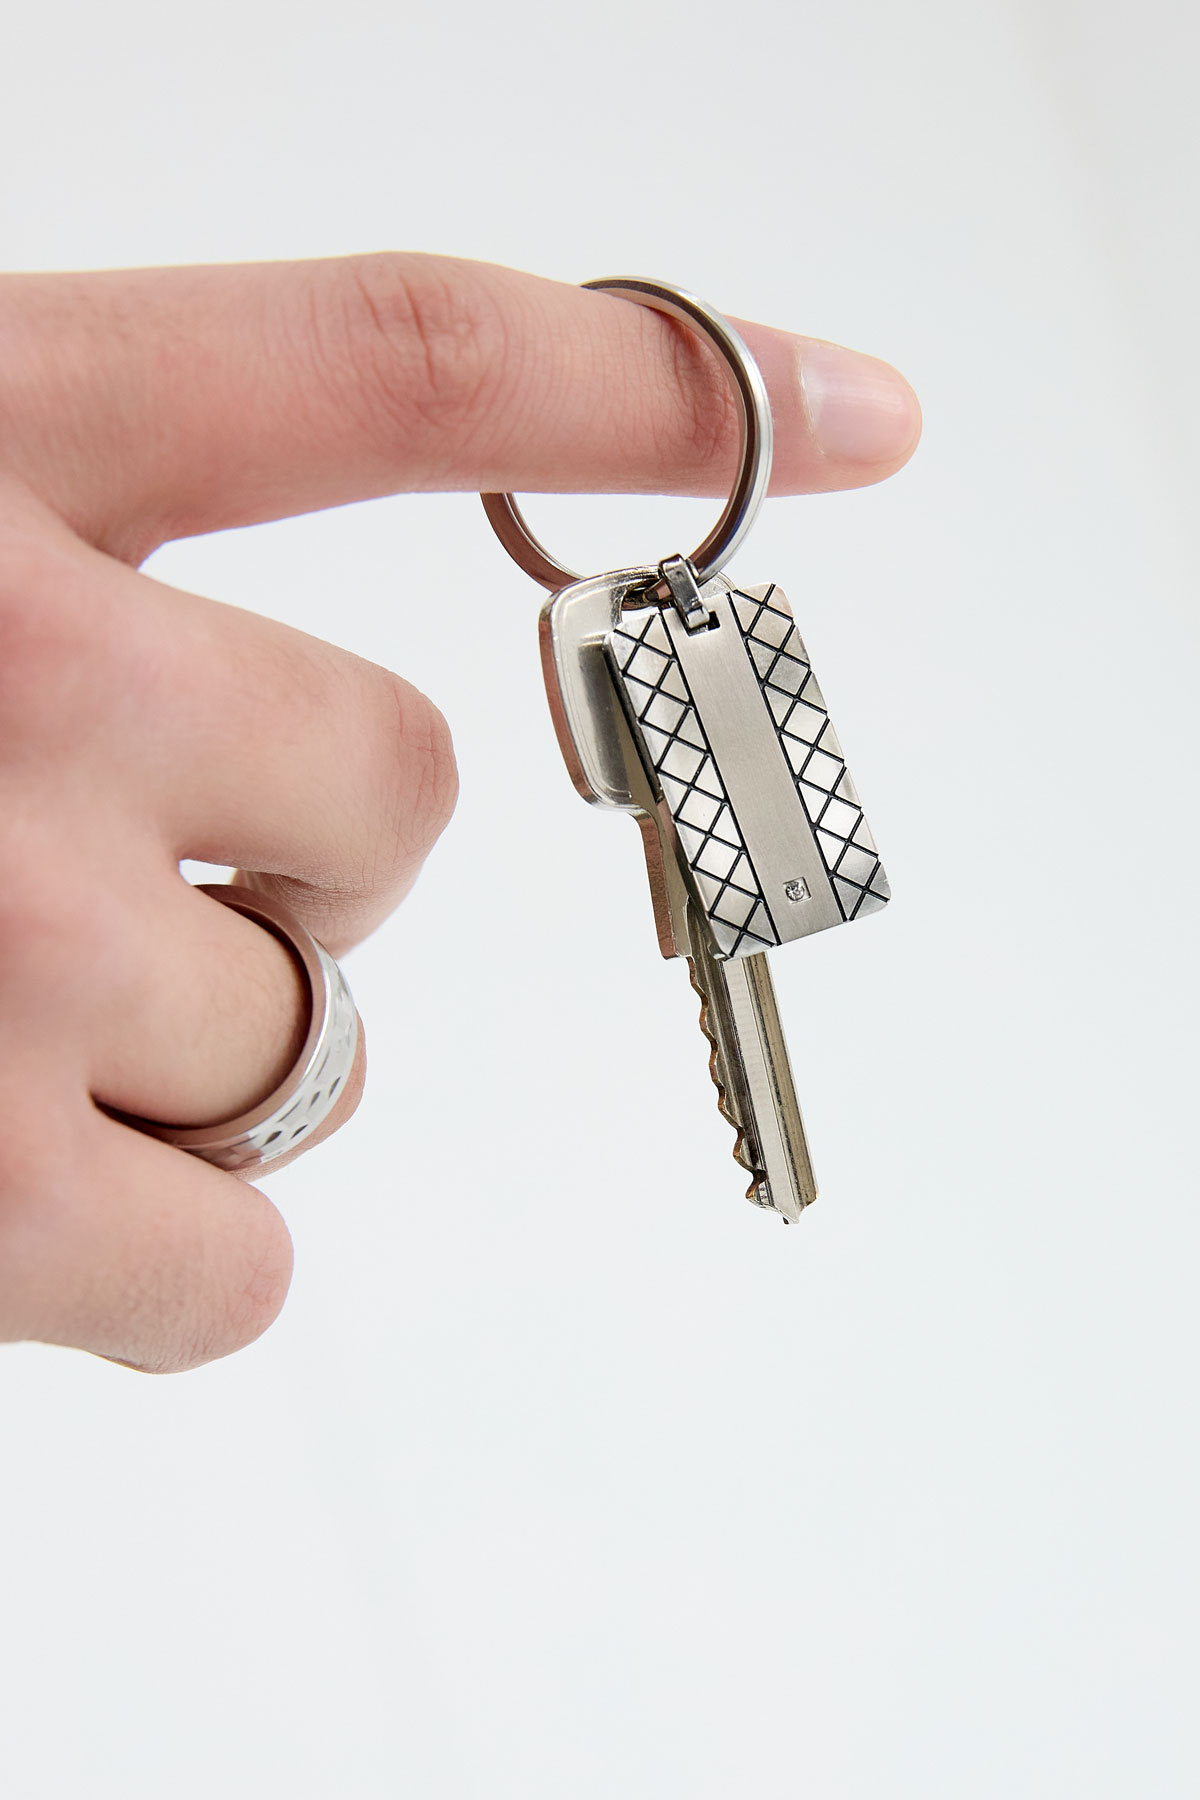 Porte-clés avec breloque motif - argenté h5 Image3